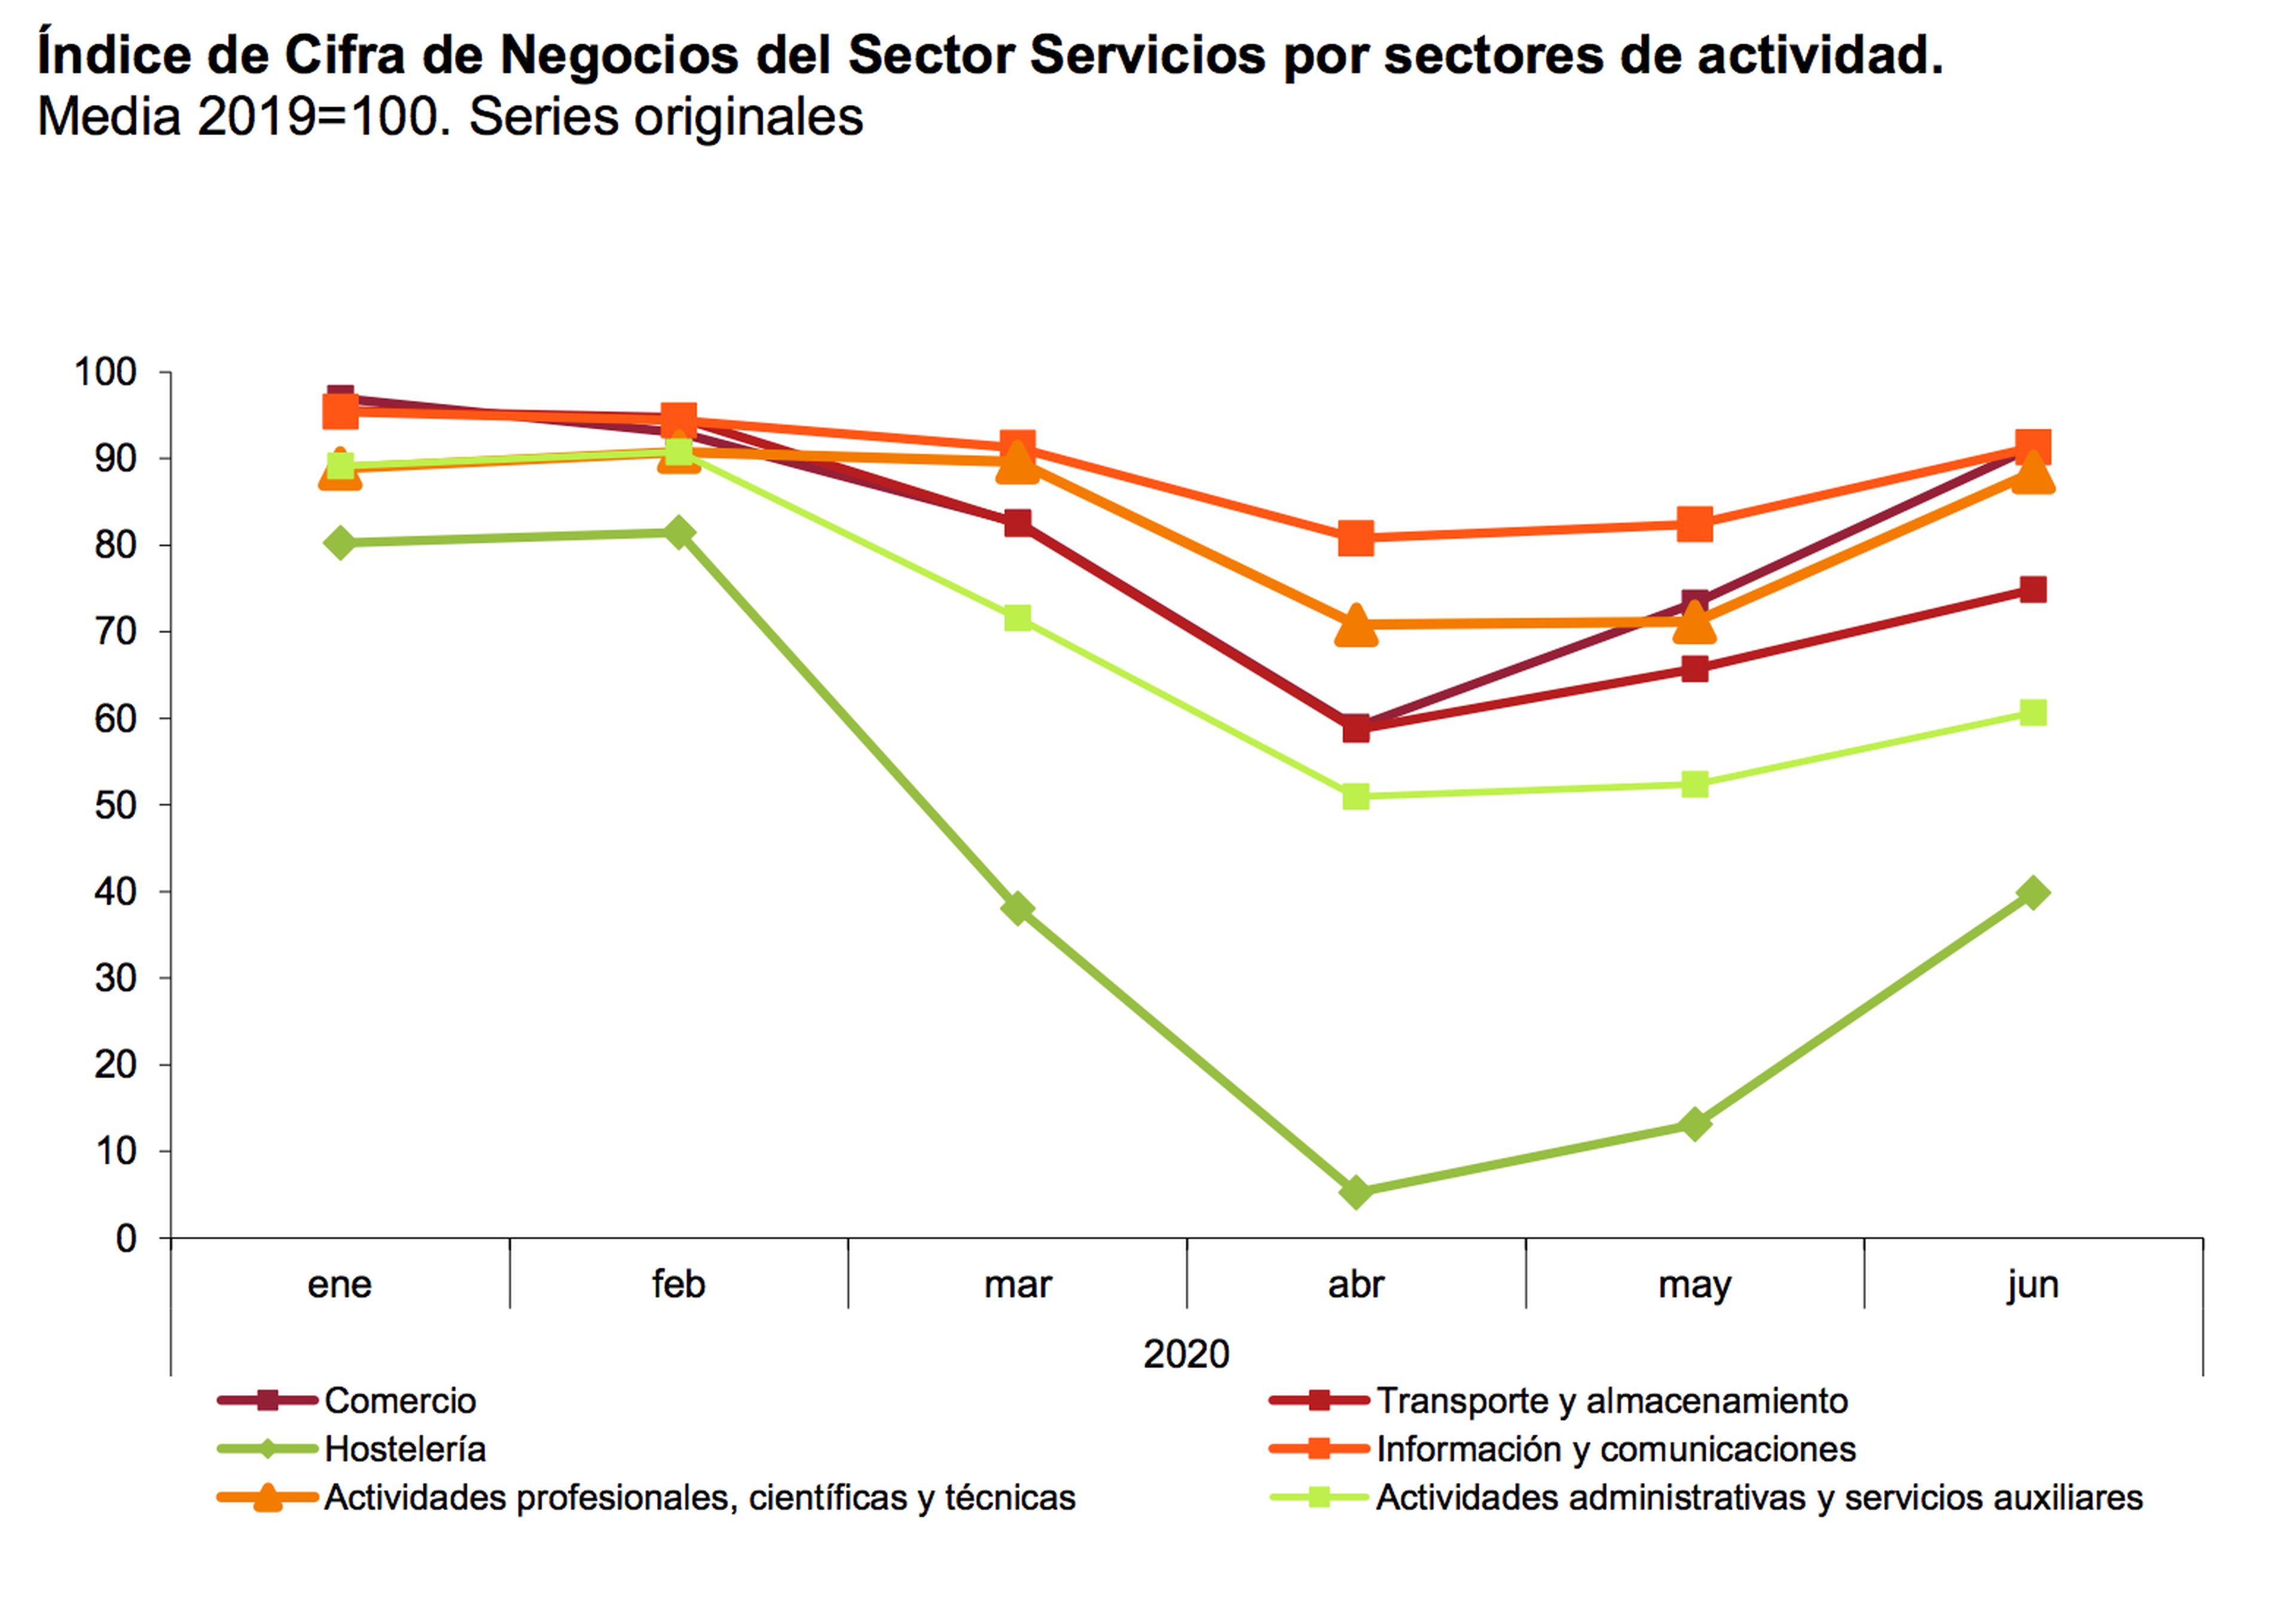 Cifra de negocio del sector servicios en sus distintos sectores de actividad